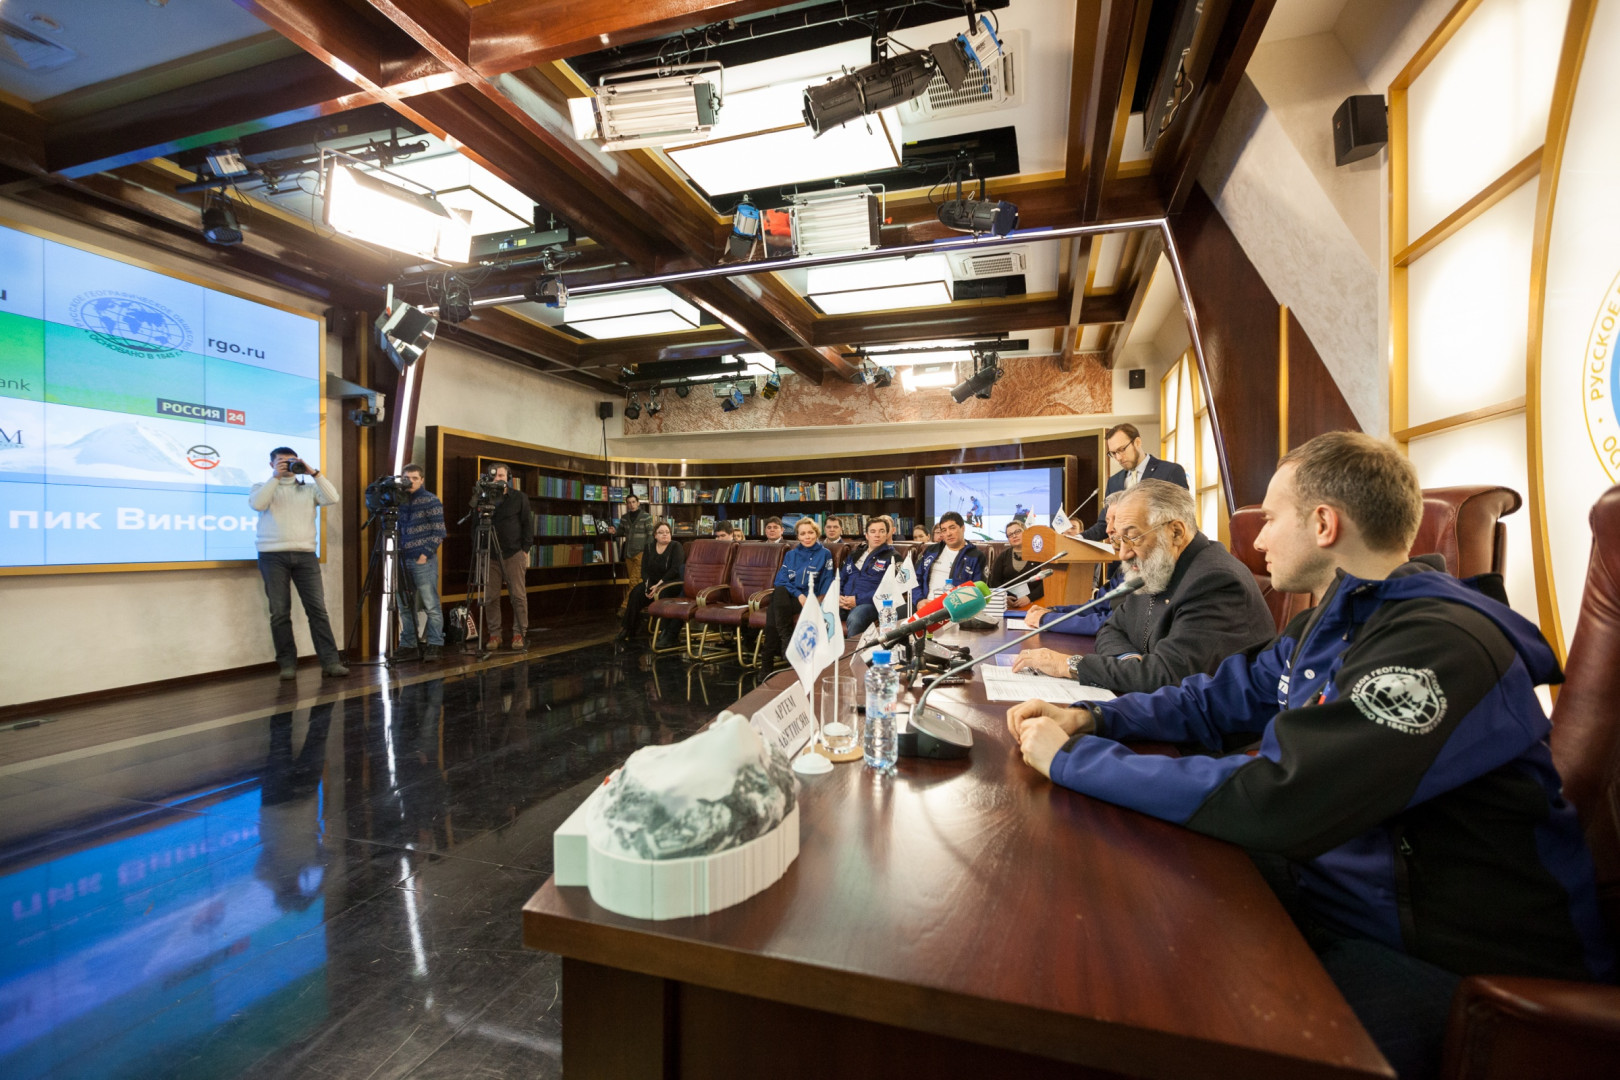 Пресс-конференция, посвященная завершению экспедиции "Антарктида. Клуб лидеров 2015"